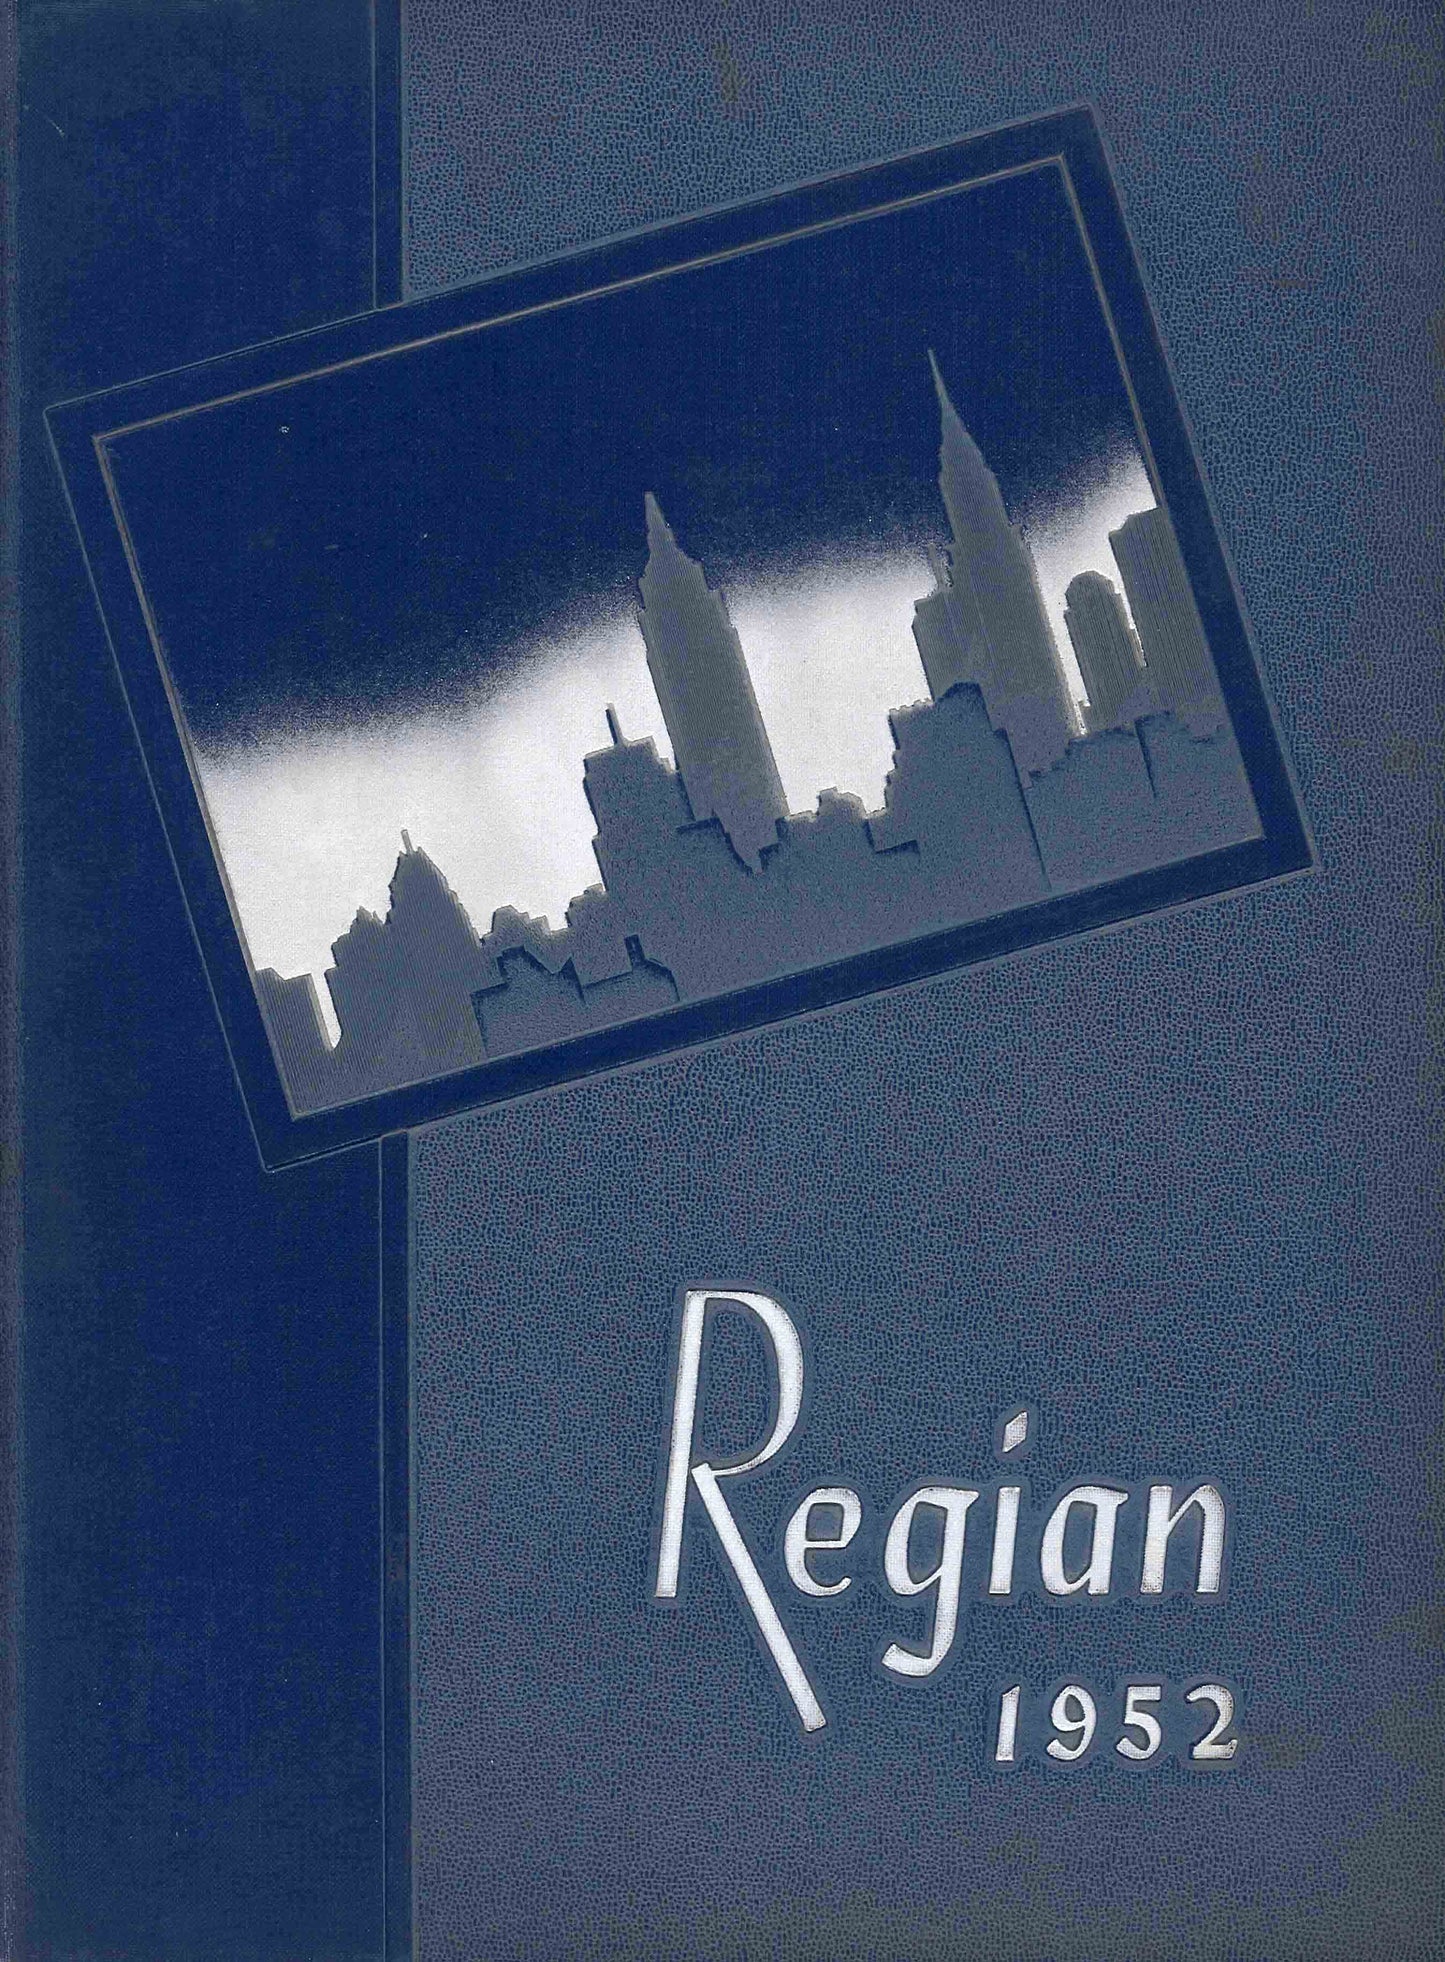 The Regian - 1952